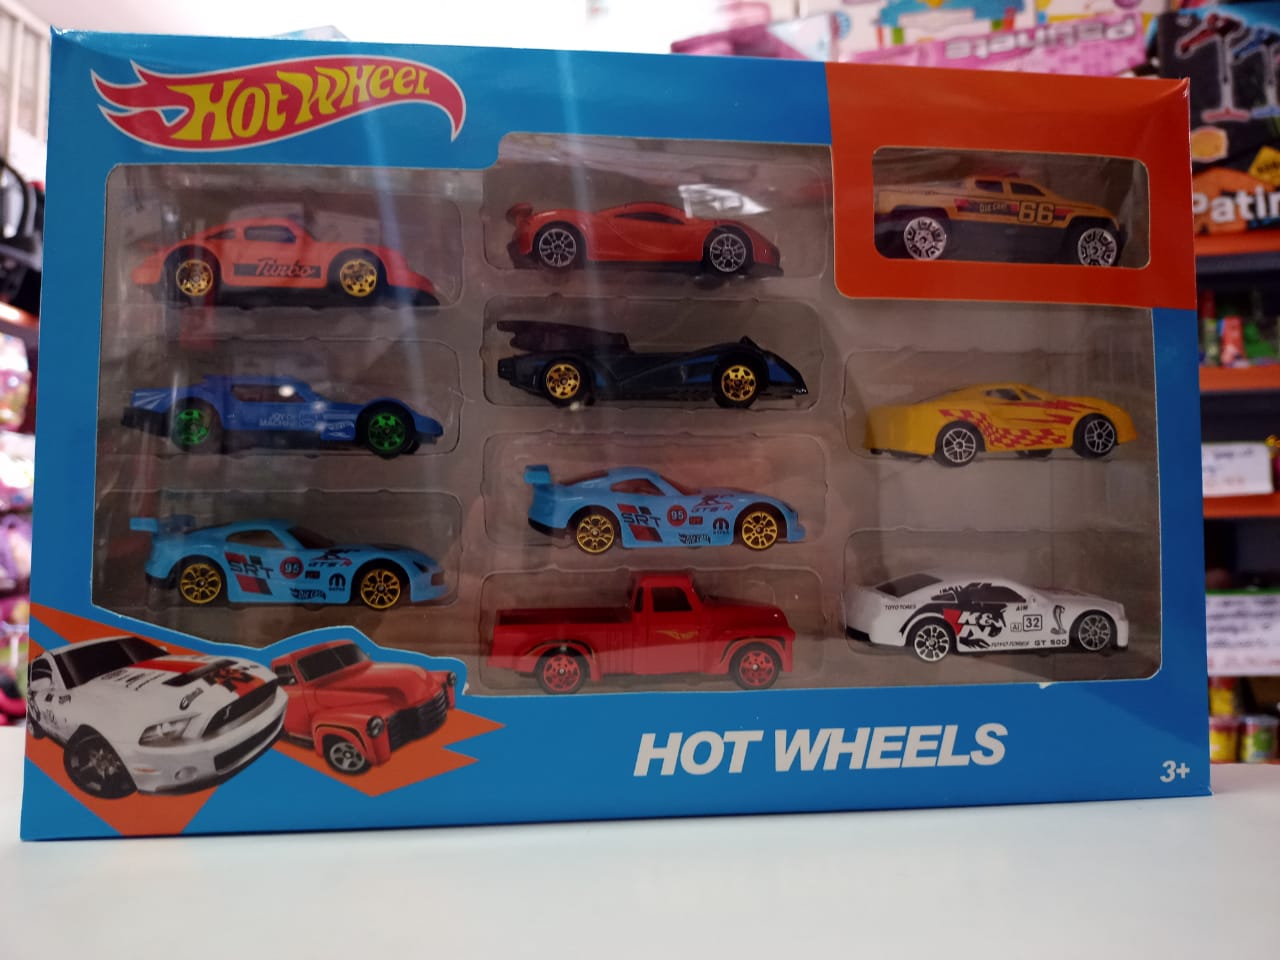 Hot Wheels Conjunto de Veículos 10 Carros Sortidos - Pirlimpimpim Brinquedos